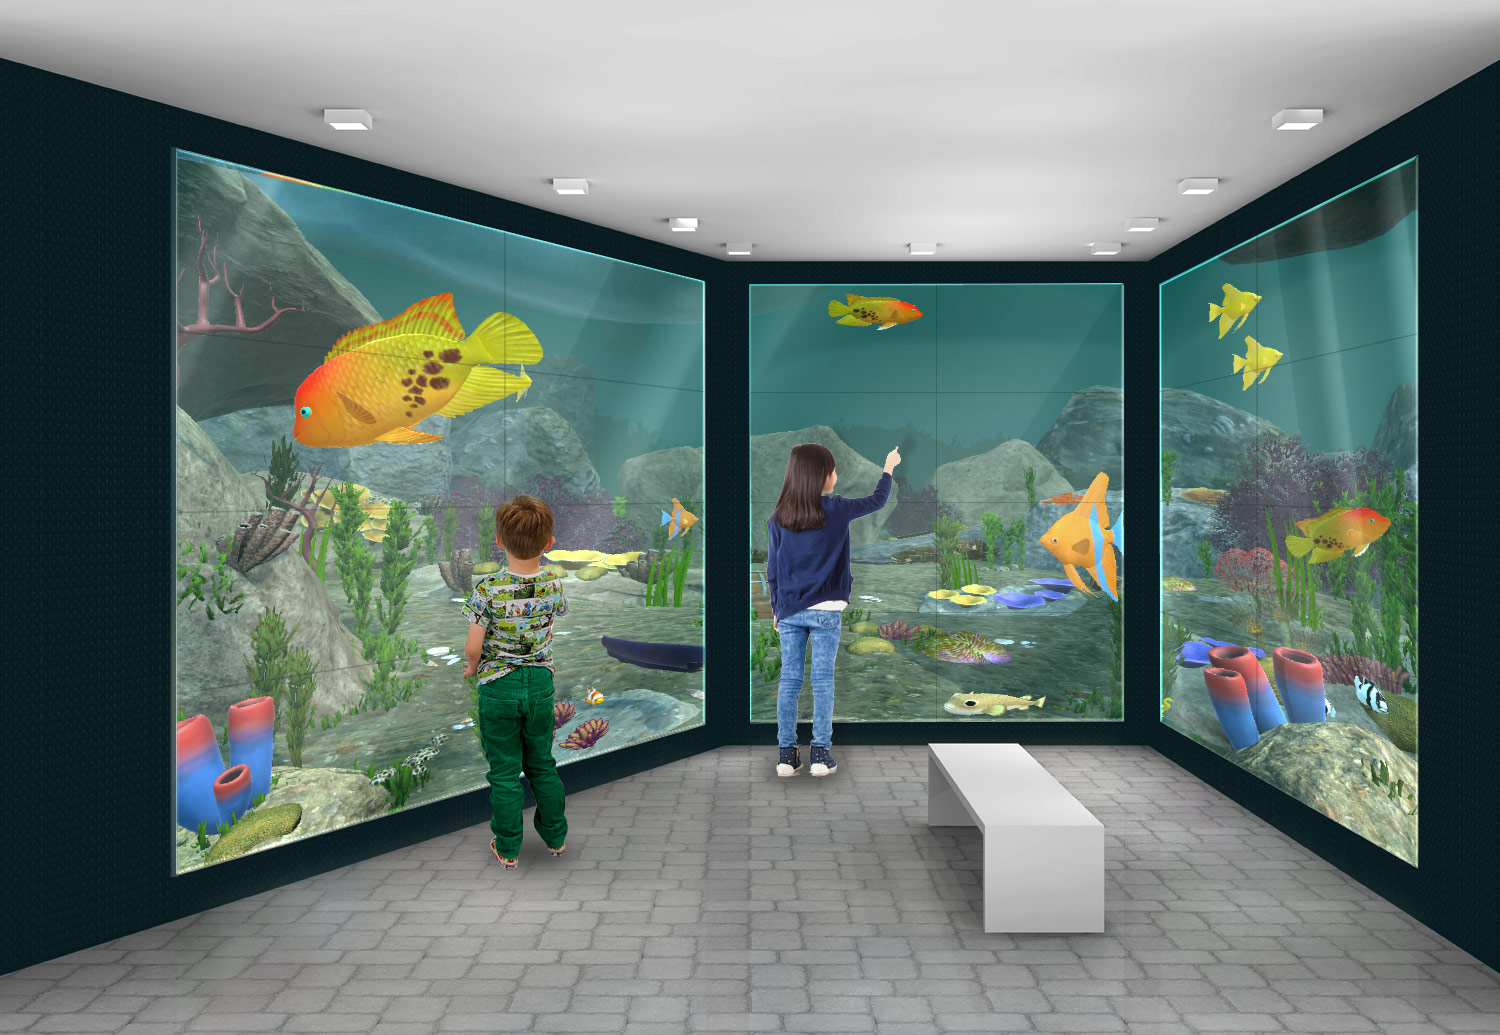 virtual aquarium pc